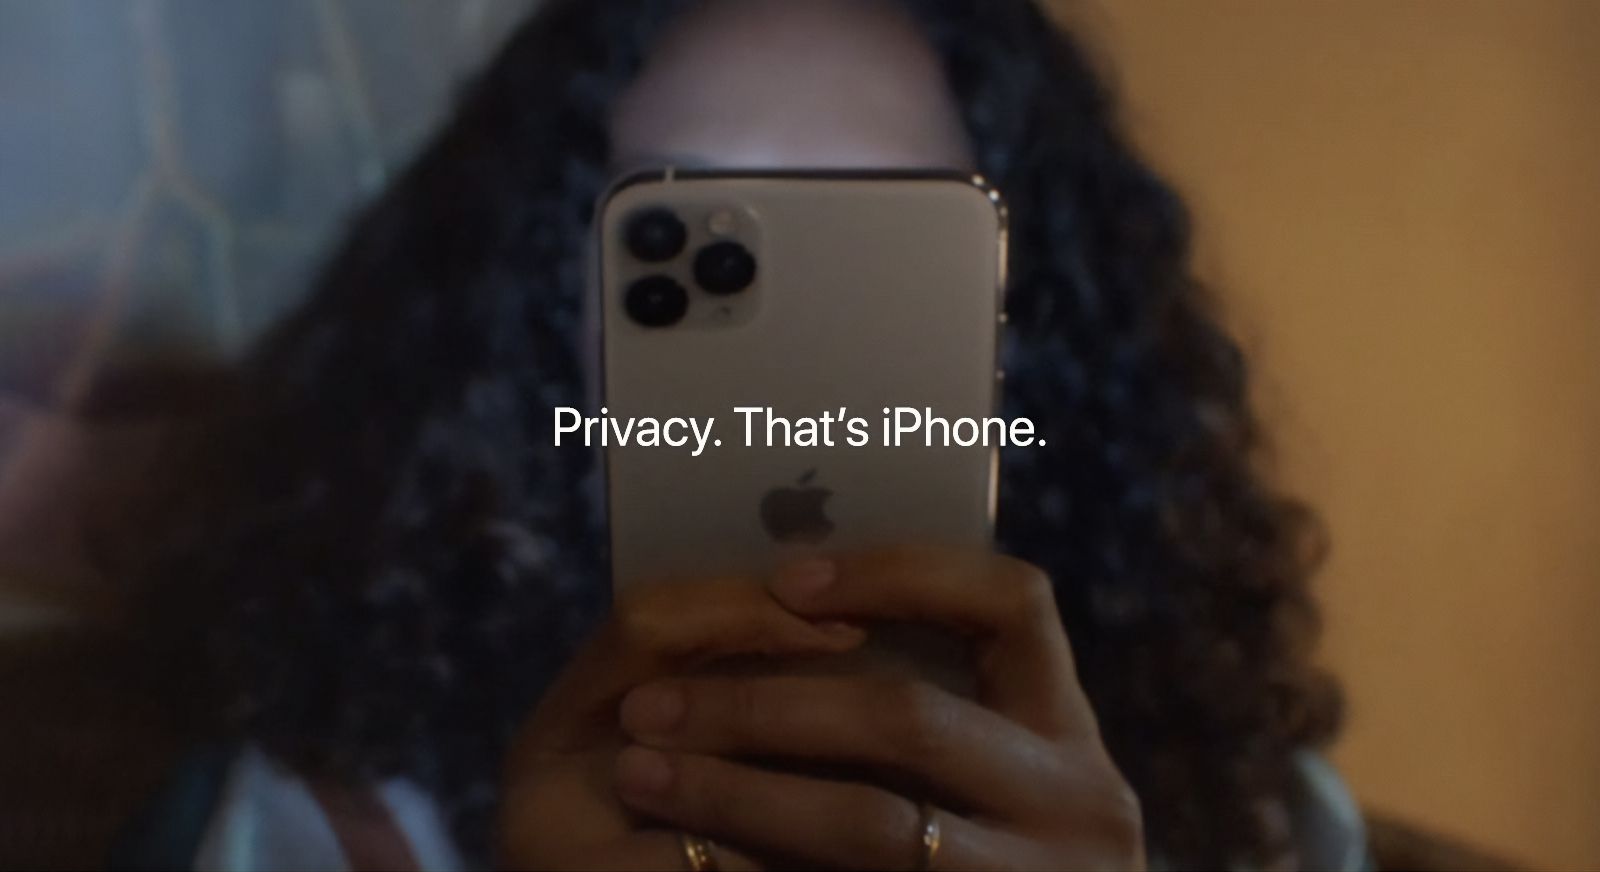 Μαζική αγωγή στην Apple επειδή εξακολουθεί να παρακολουθεί τους χρήστες παρά τις διαβεβαιώσεις περί ιδιωτικότητας